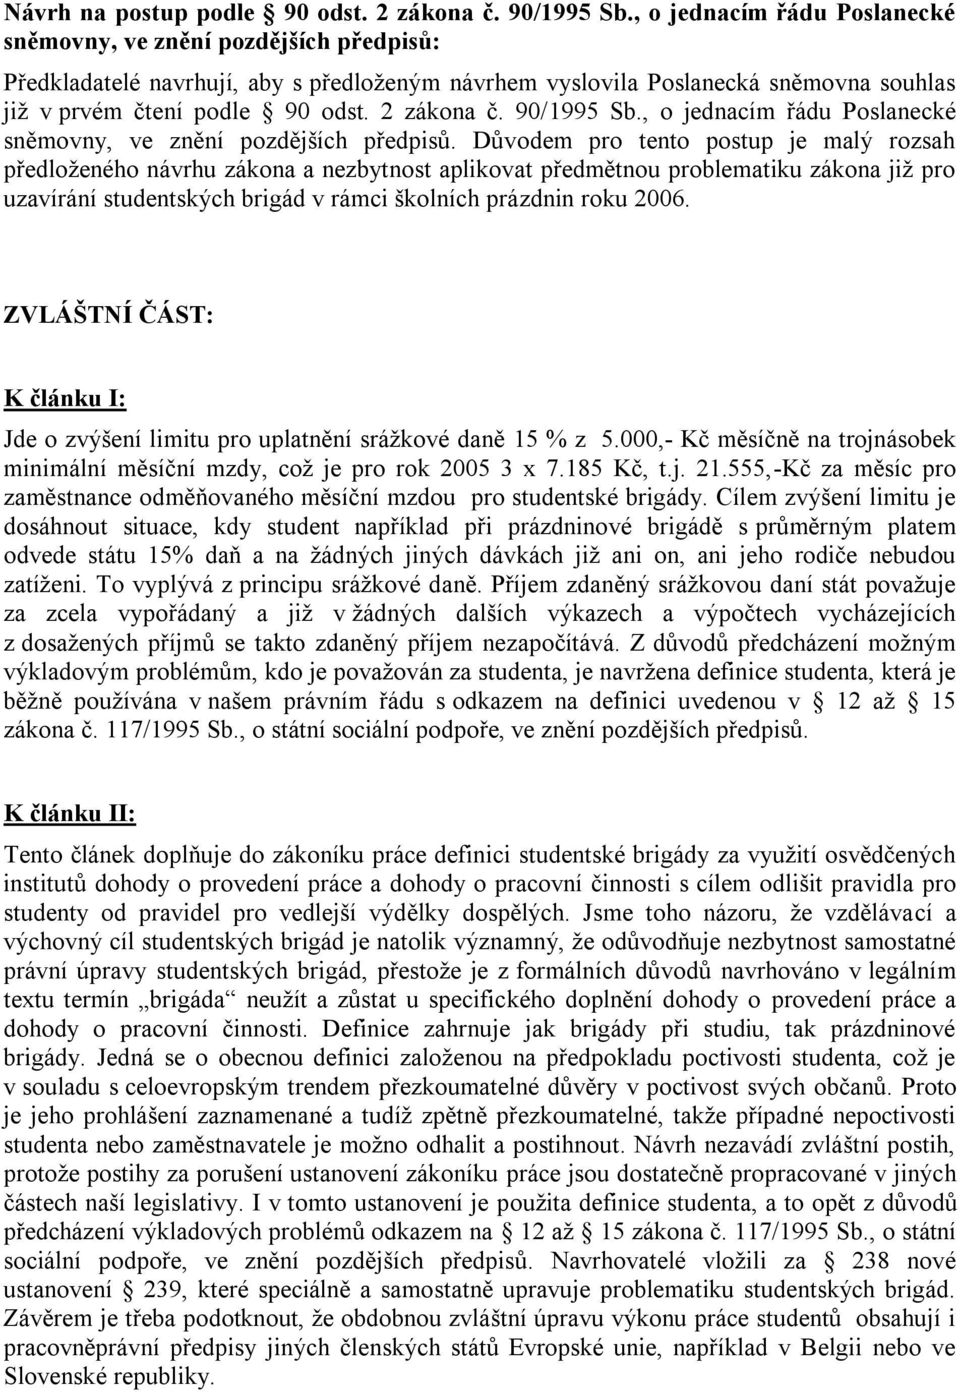 2 zákona č. 90/1995 Sb., o jednacím řádu Poslanecké sněmovny, ve znění pozdějších předpisů.